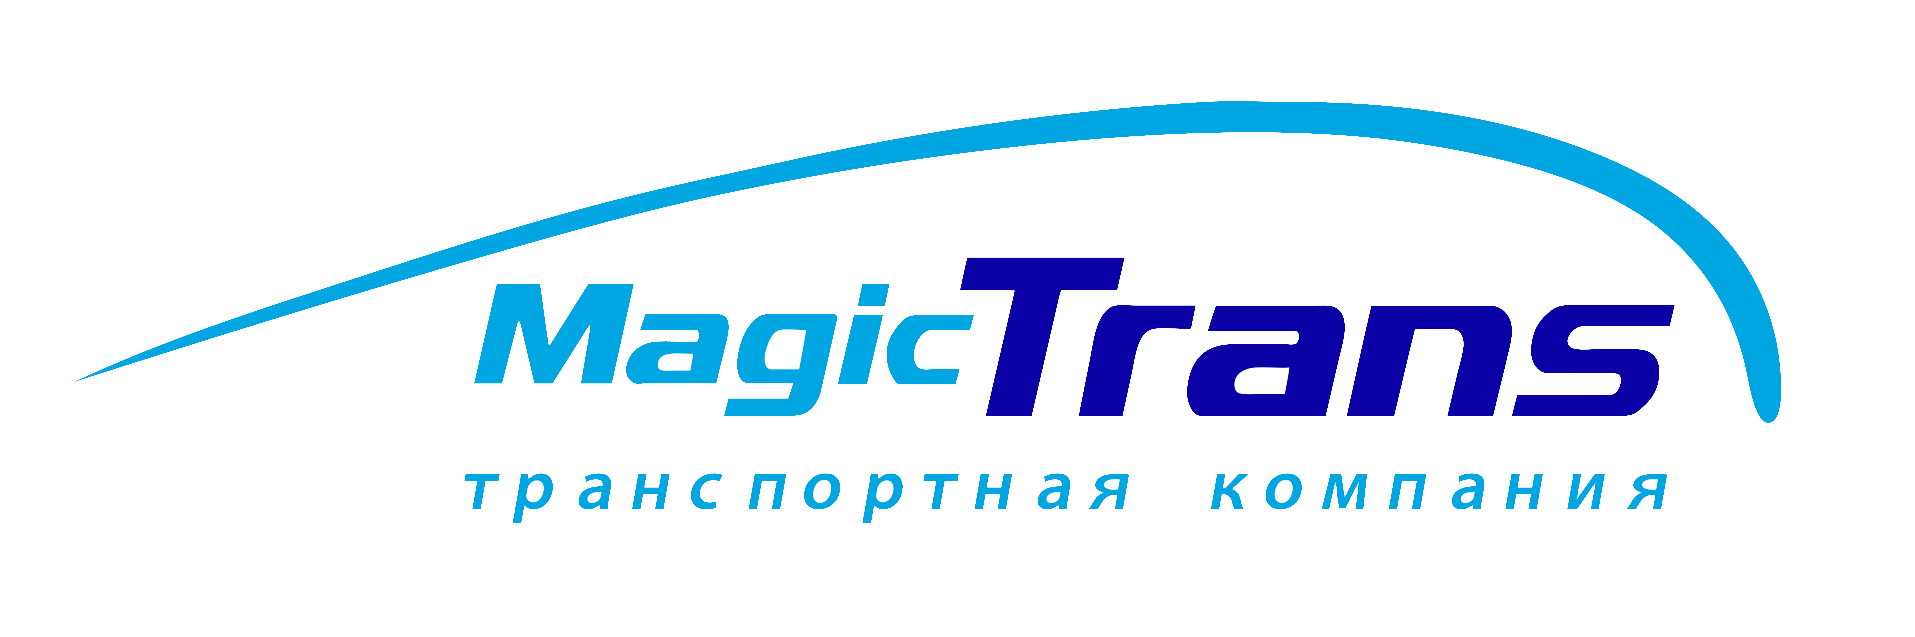 Мейджик краснодар. Компания Мейджик транс. Magic Trans логотип. Эмблема транспортной компании. ТК «Мейджик транс» лого.